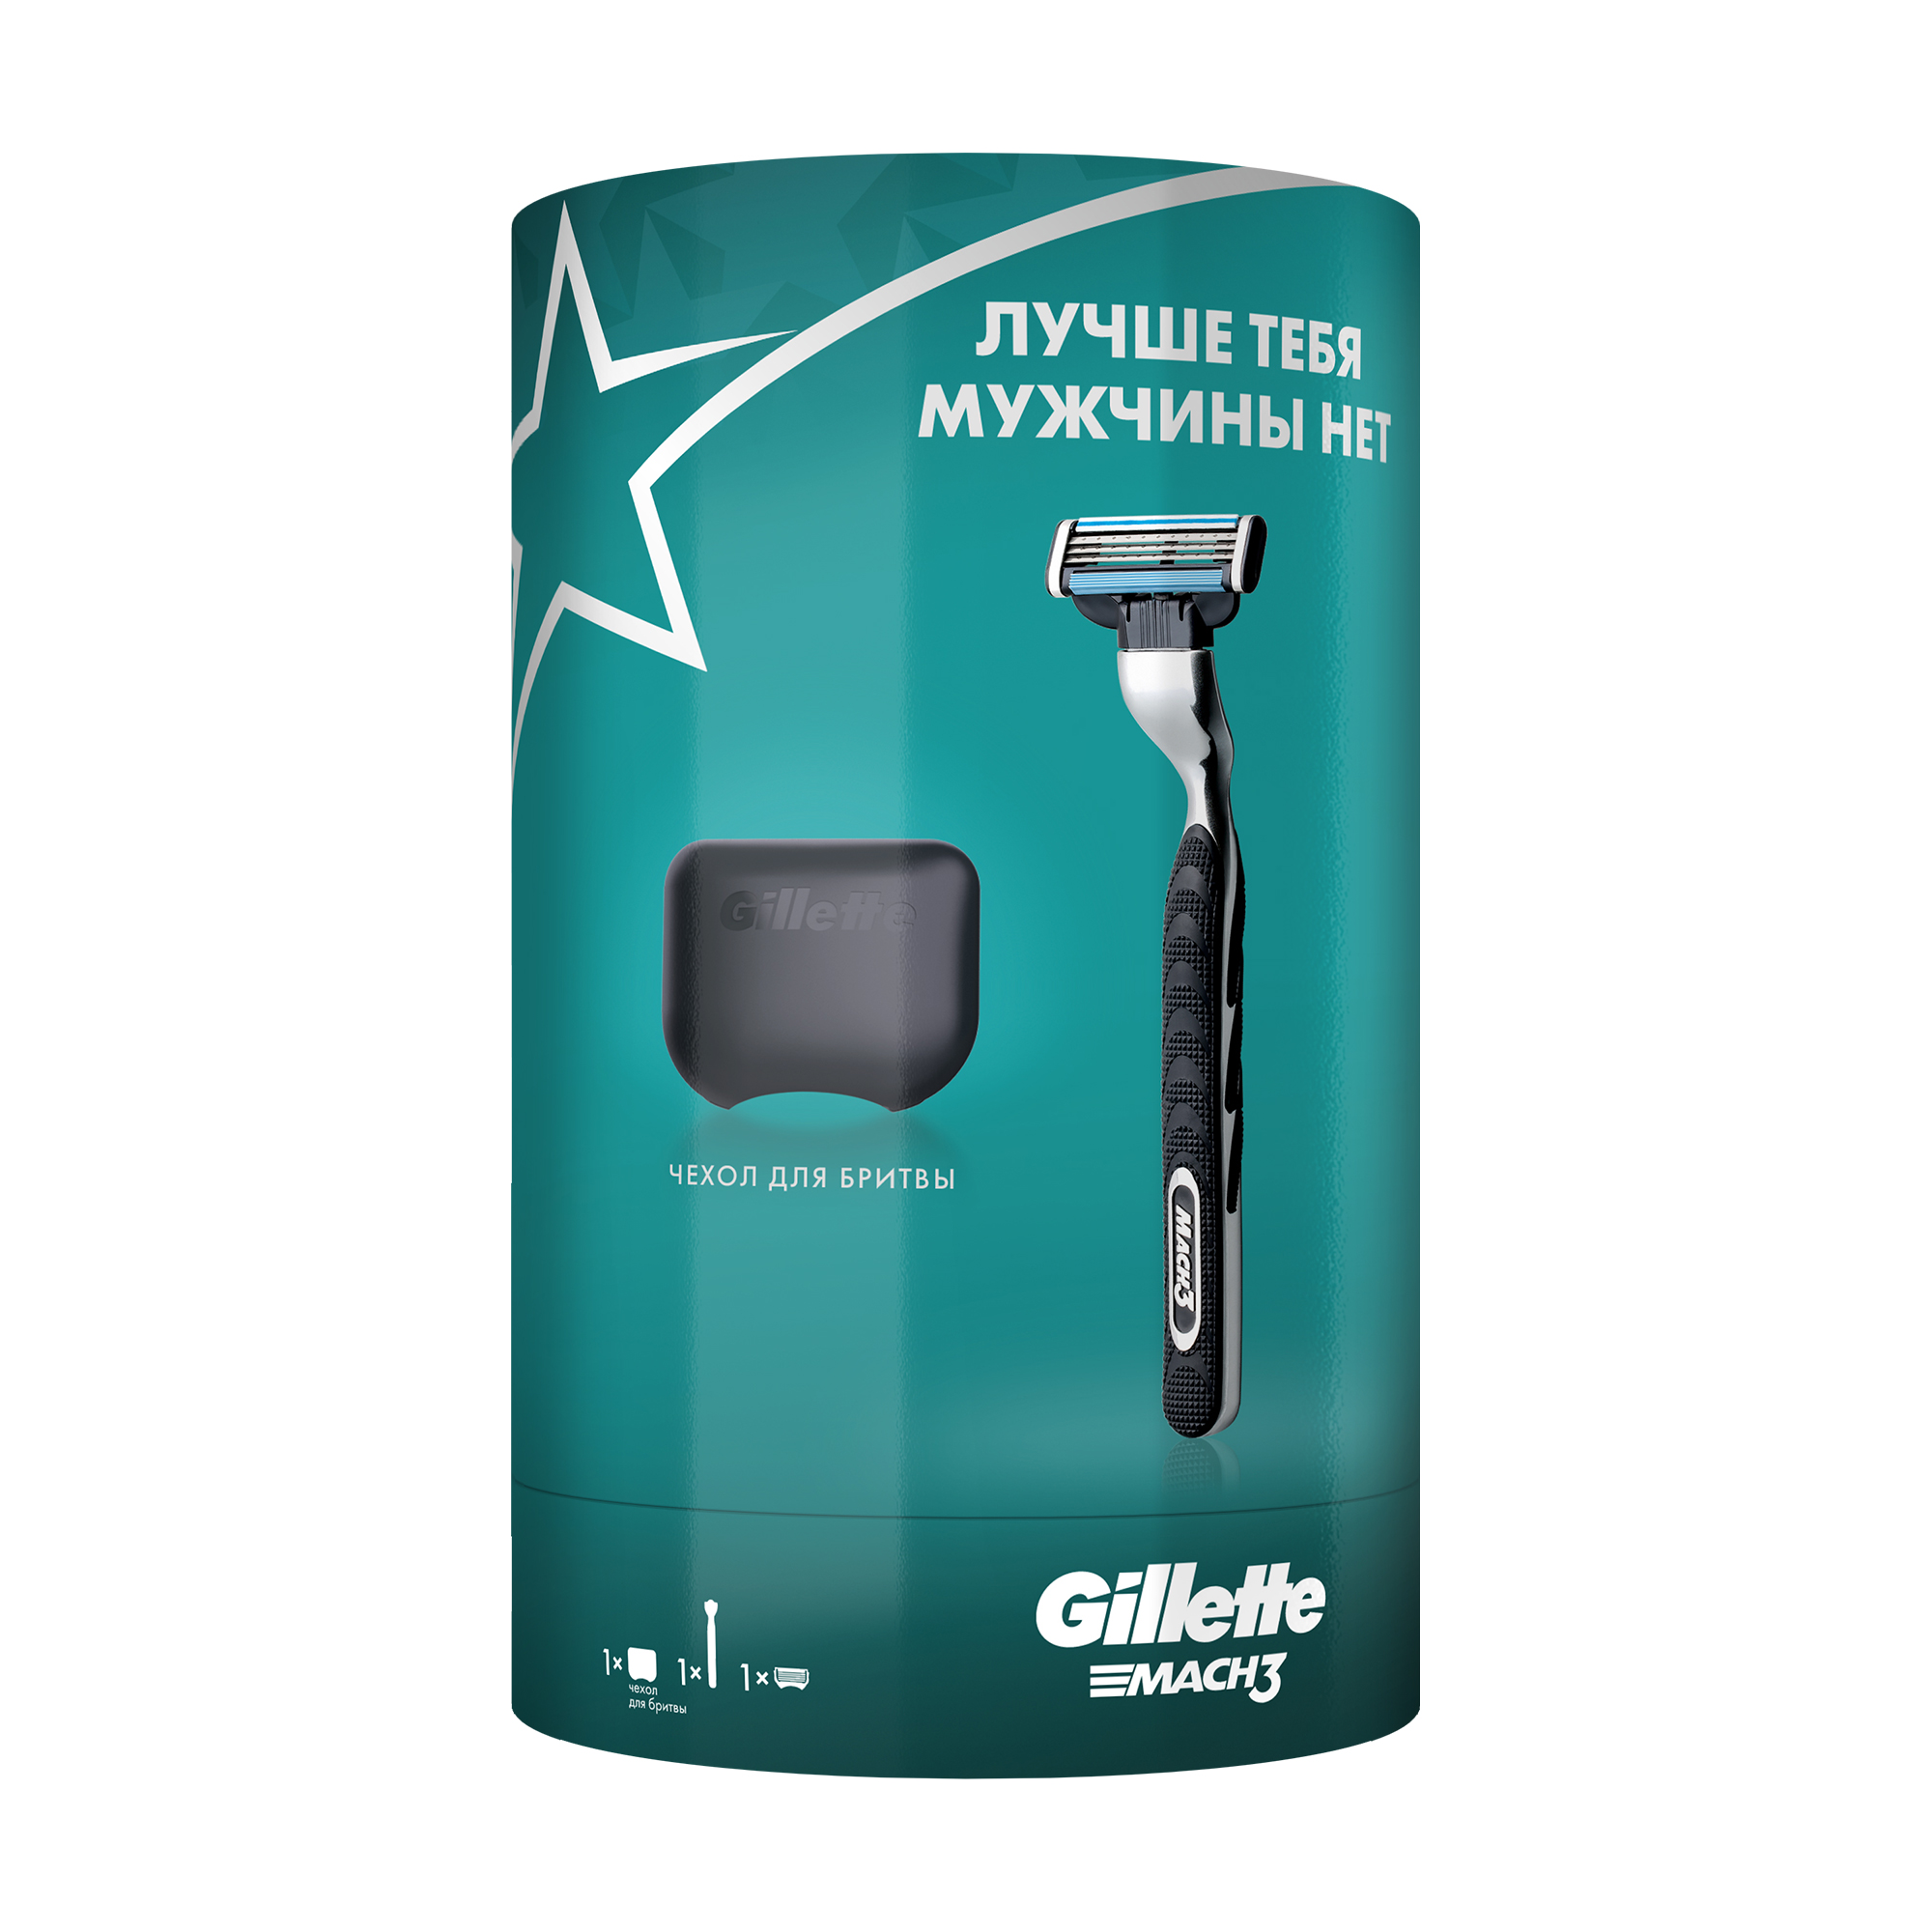 Подарочный набор мужской Gillette Mach3 бритва с 1 кассетой + чехол набор блокнотов прочнее камня 06 0800